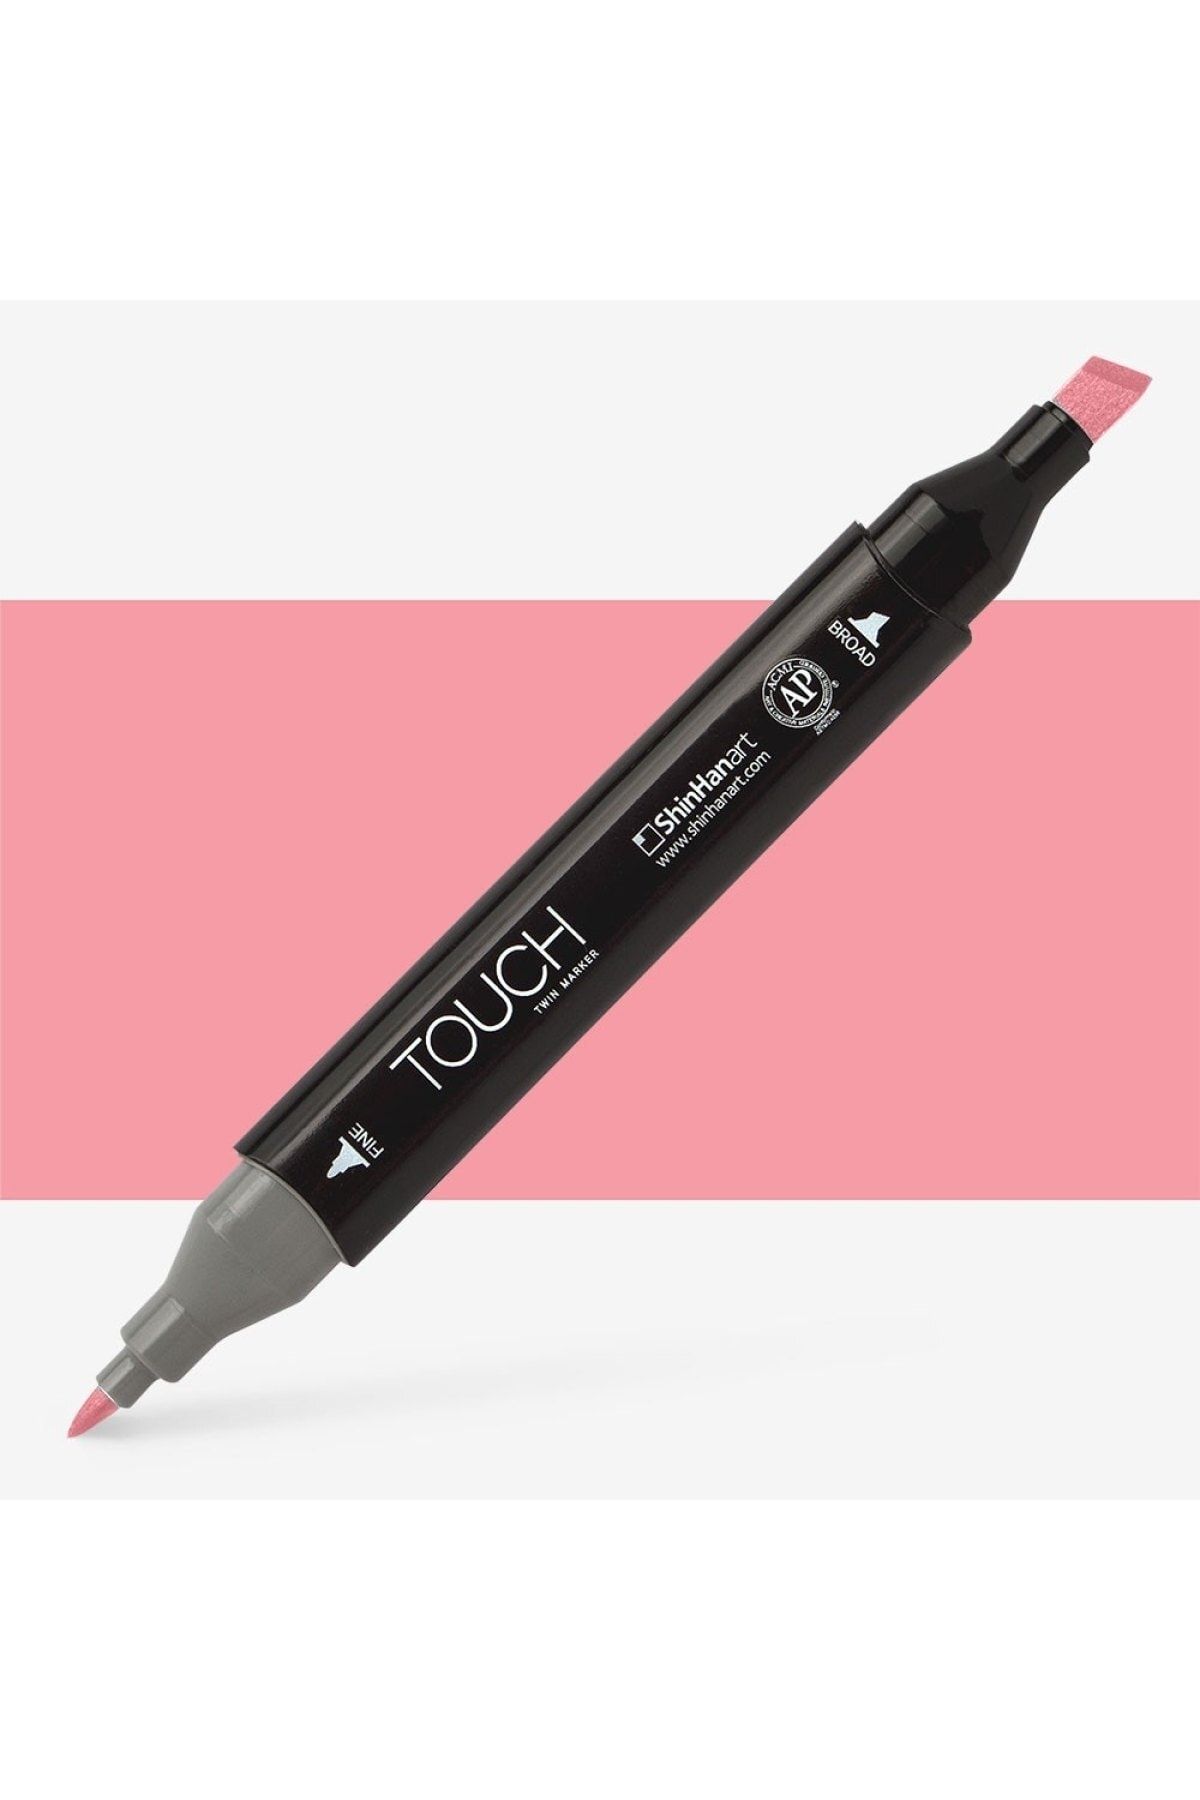 Shinhan Art Touch Twin Marker Pen : Çift Uçlu Marker Kalemi : Cosmos : Rp7